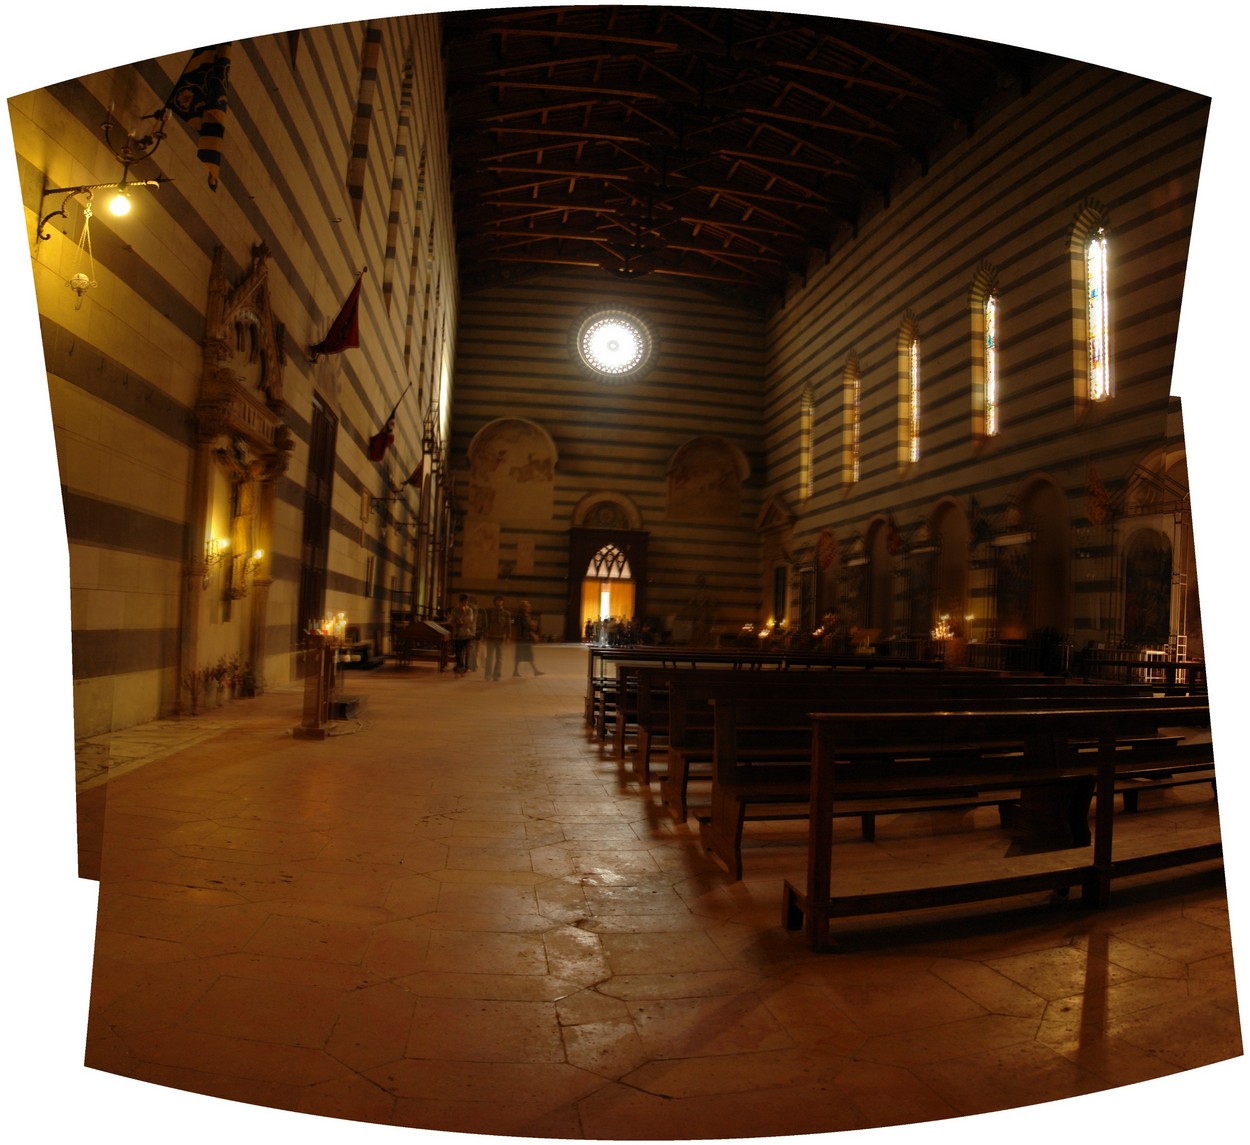 St. Florenz in Siena   